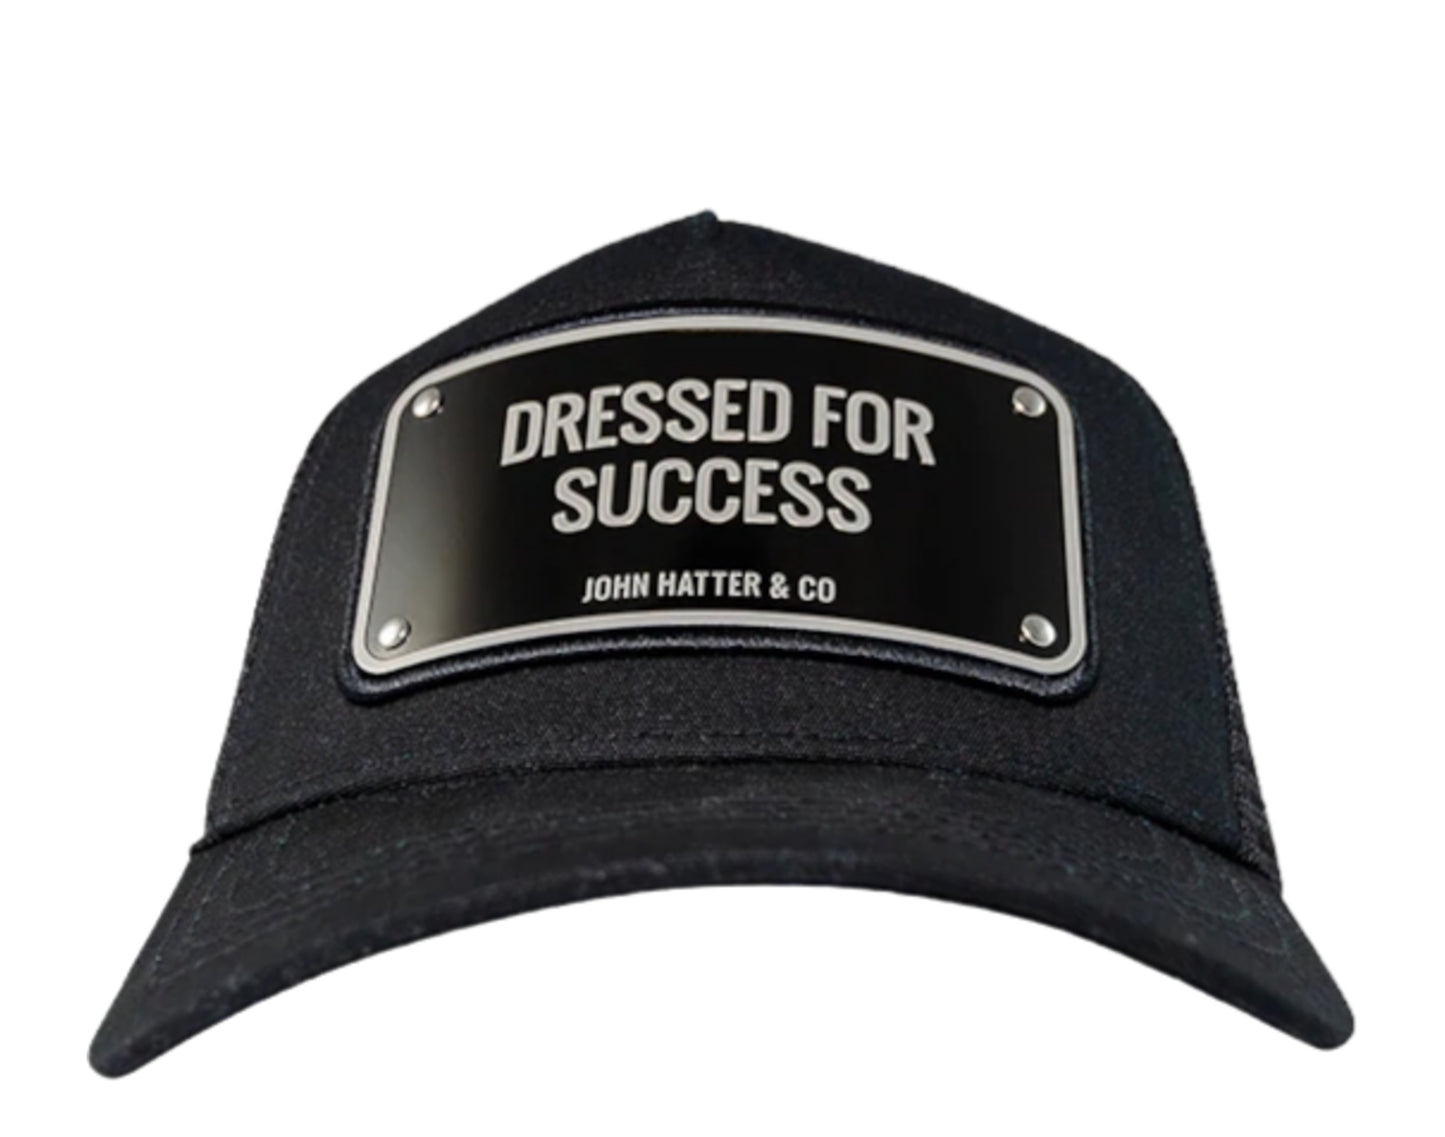 John Hatter & Co Dressed For Success Trucker Hat